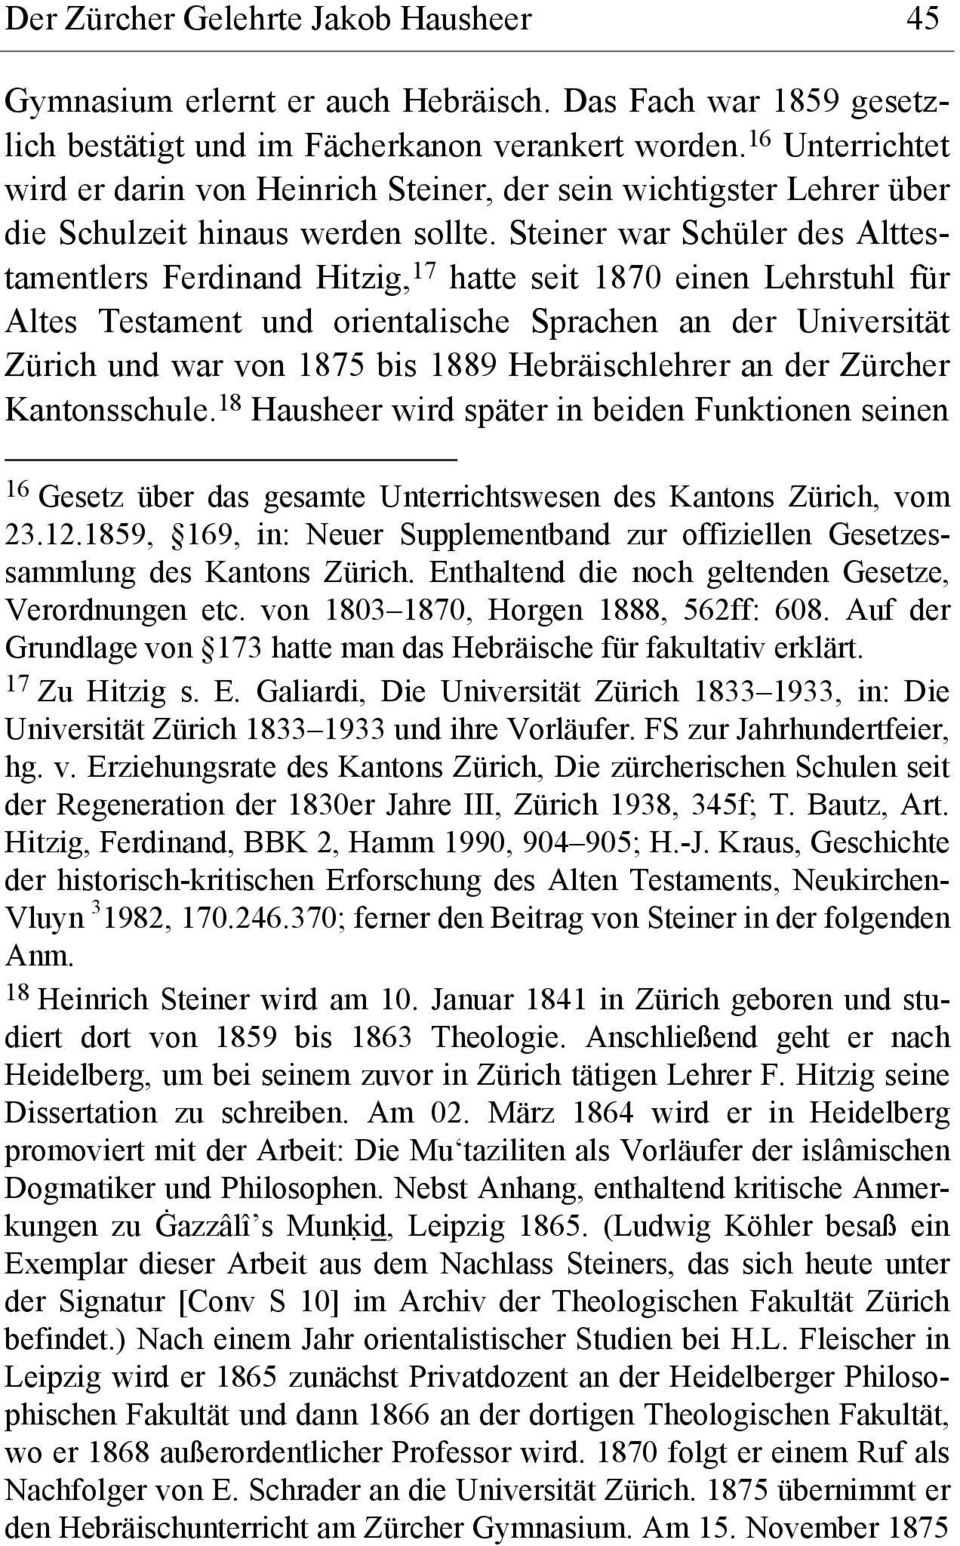 Steiner war Schüler des Alttestamentlers Ferdinand Hitzig, 17 hatte seit 1870 einen Lehrstuhl für Altes Testament und orientalische Sprachen an der Universität Zürich und war von 1875 bis 1889